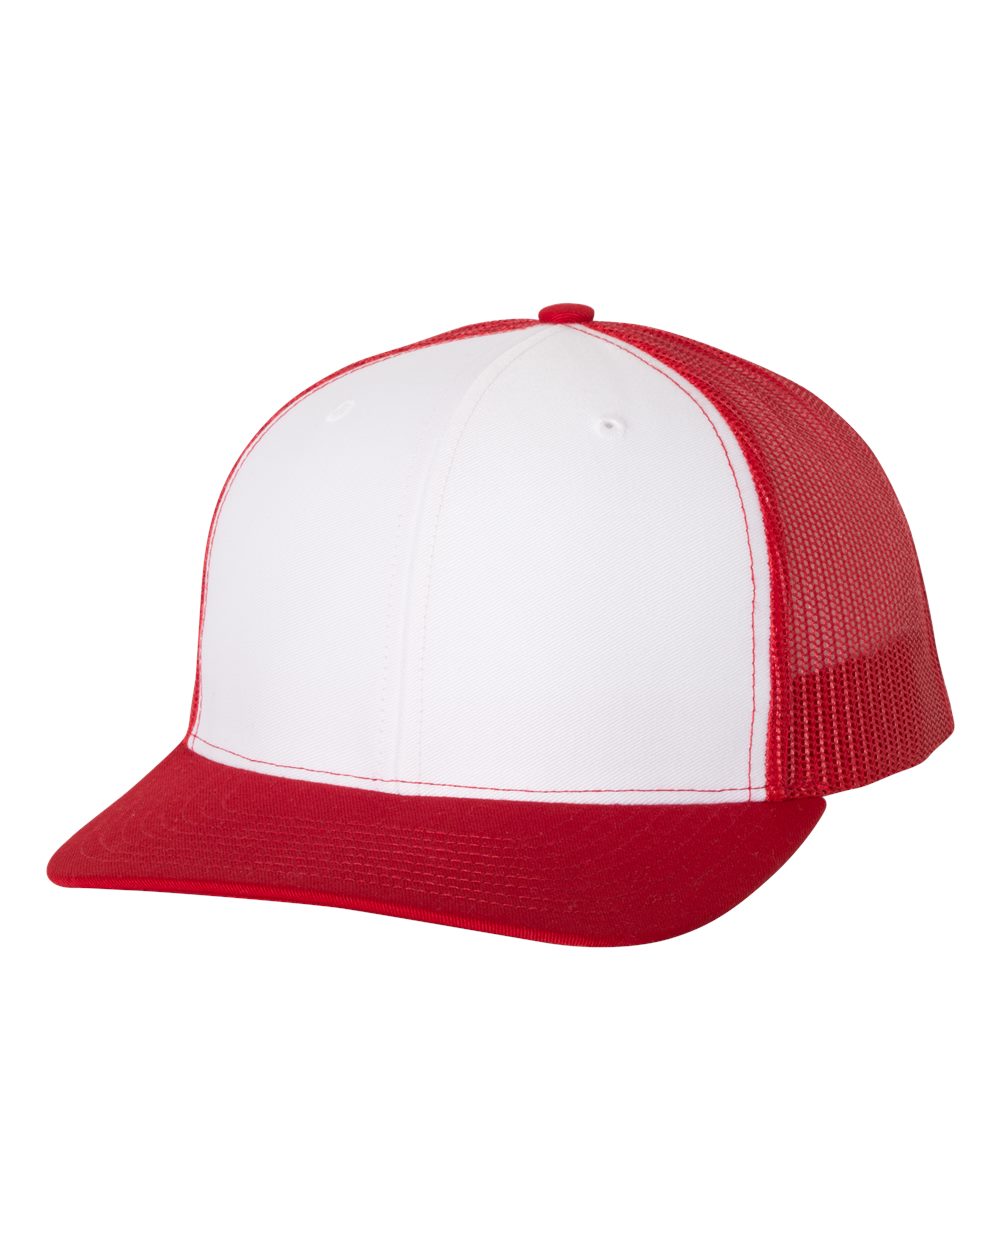 richardson cap white red